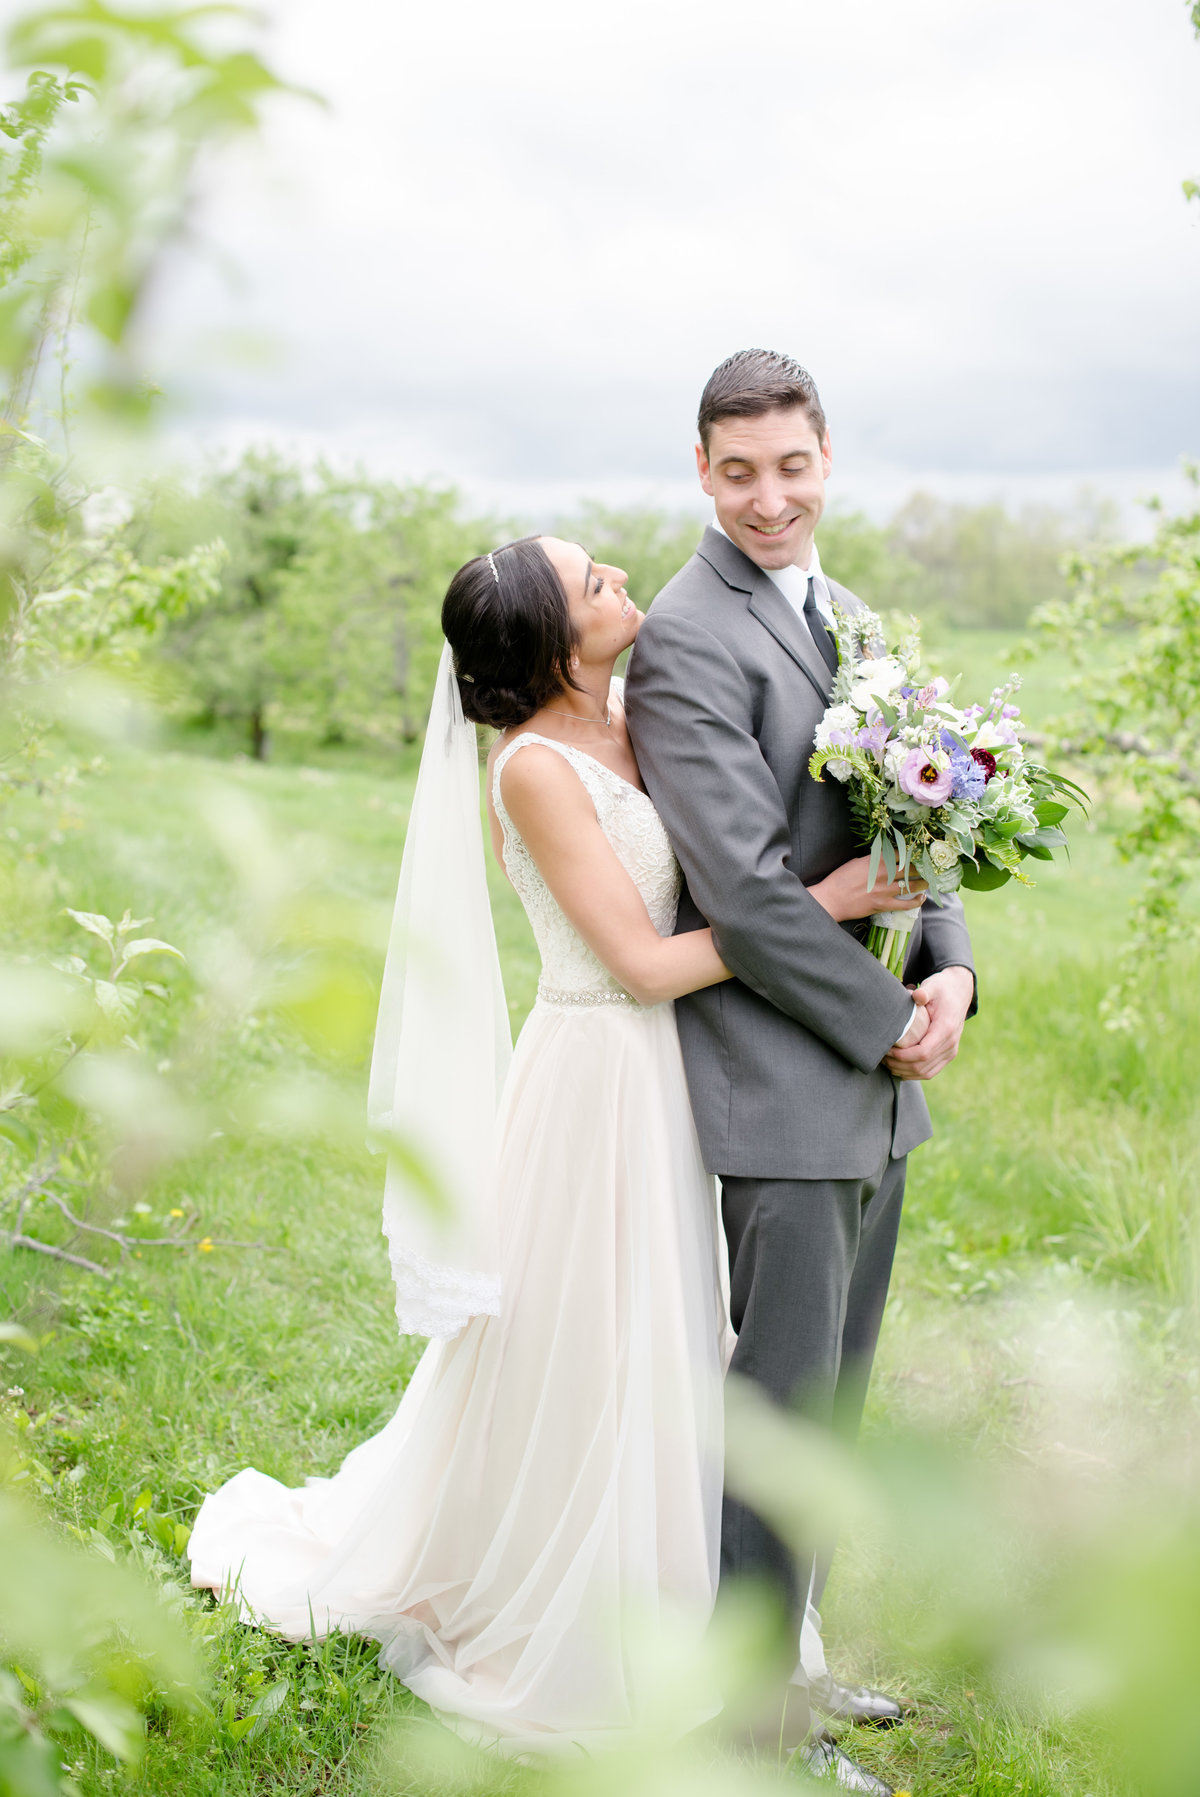 Rustic Barn Wedding Pennsylvania-Rodale Institute Wedding Raquel and Daniel Wedding 22979-34